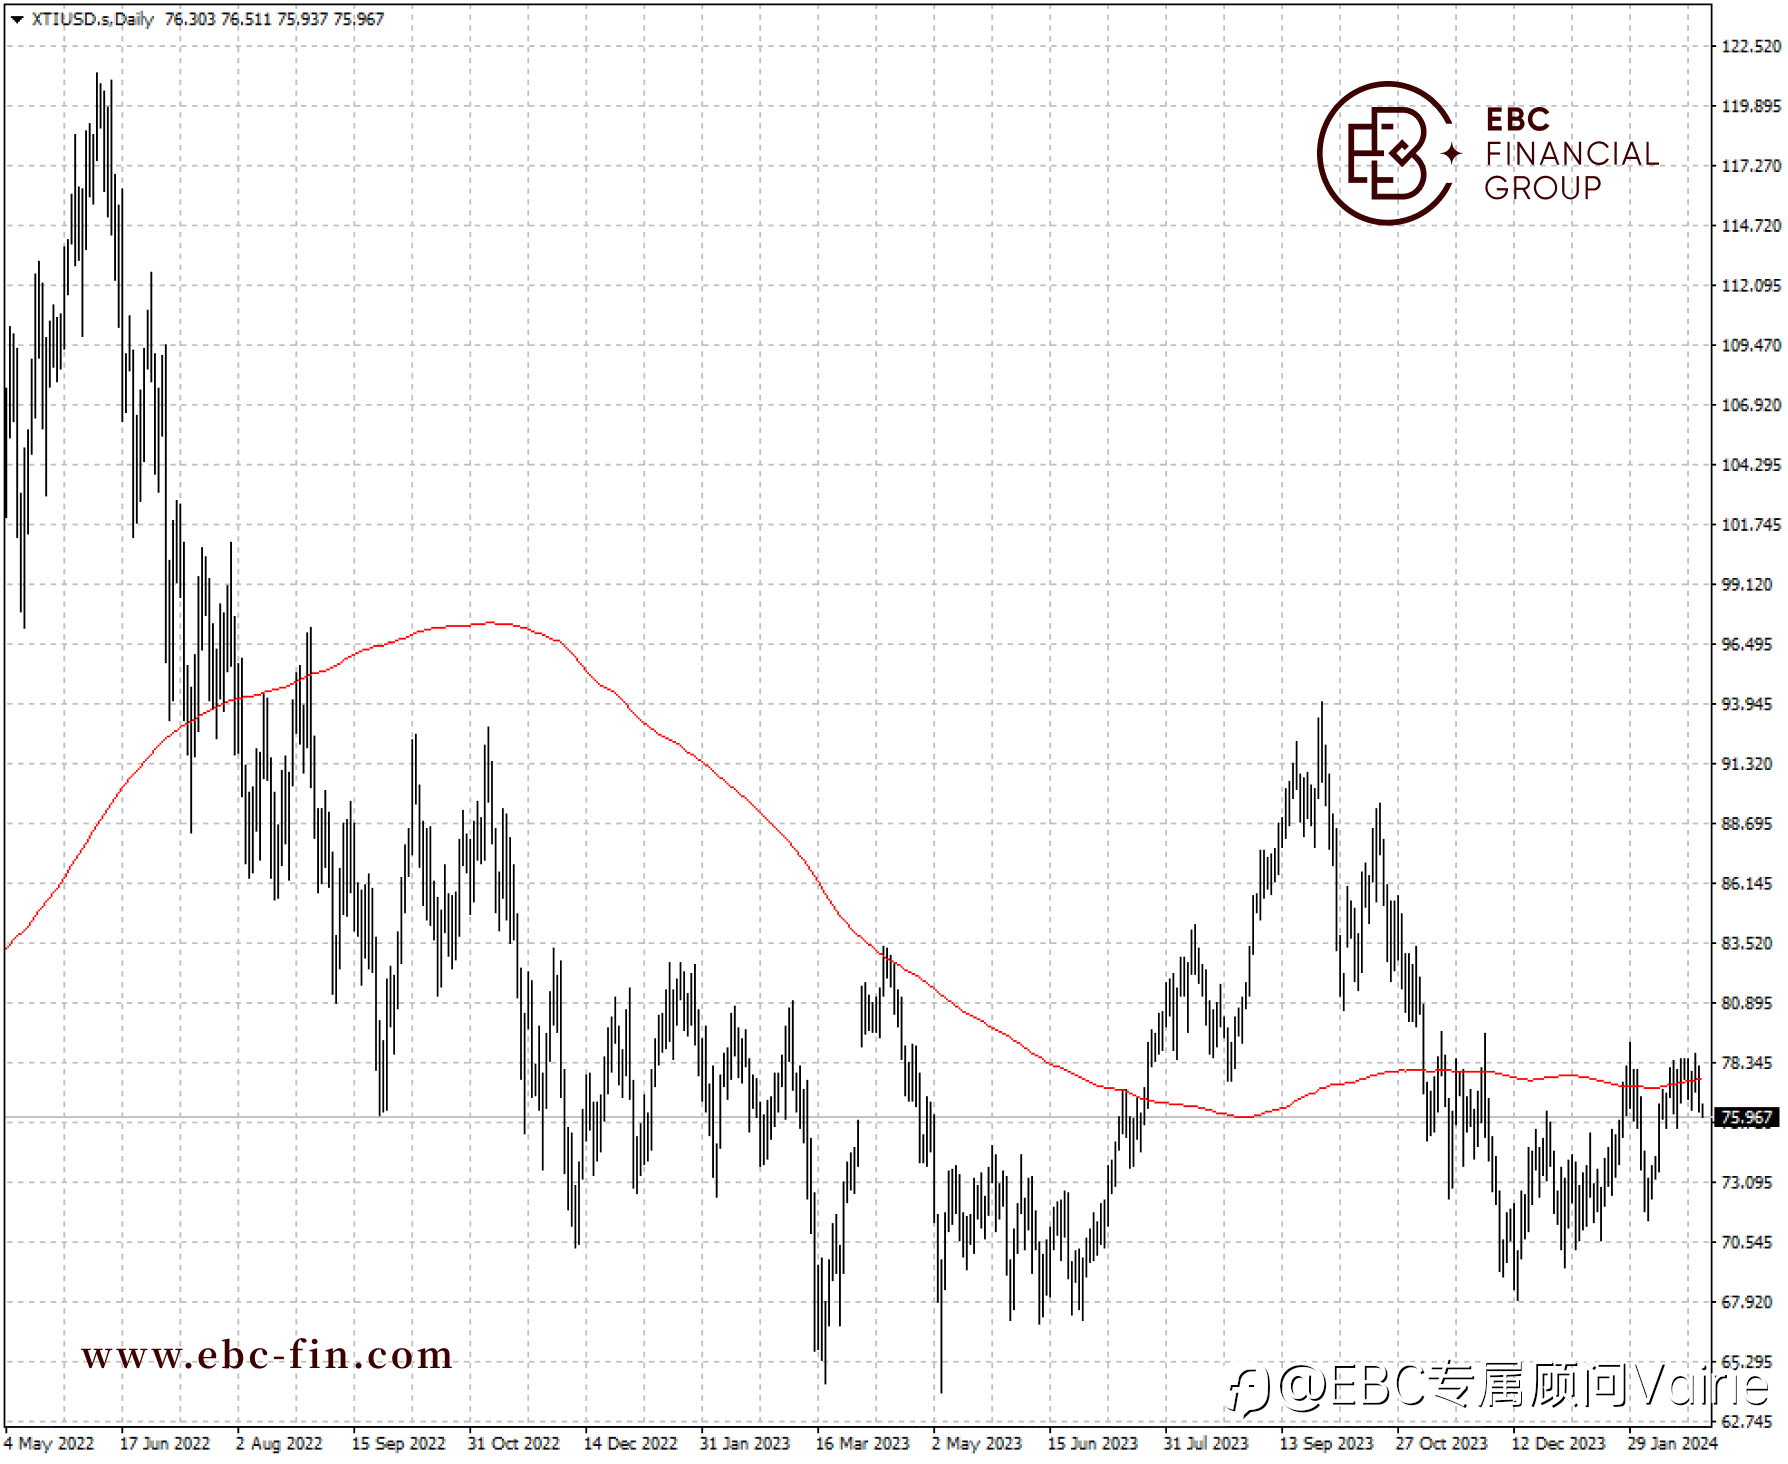 EBC环球焦点|高利率主导油价 哈以和谈进展缓慢